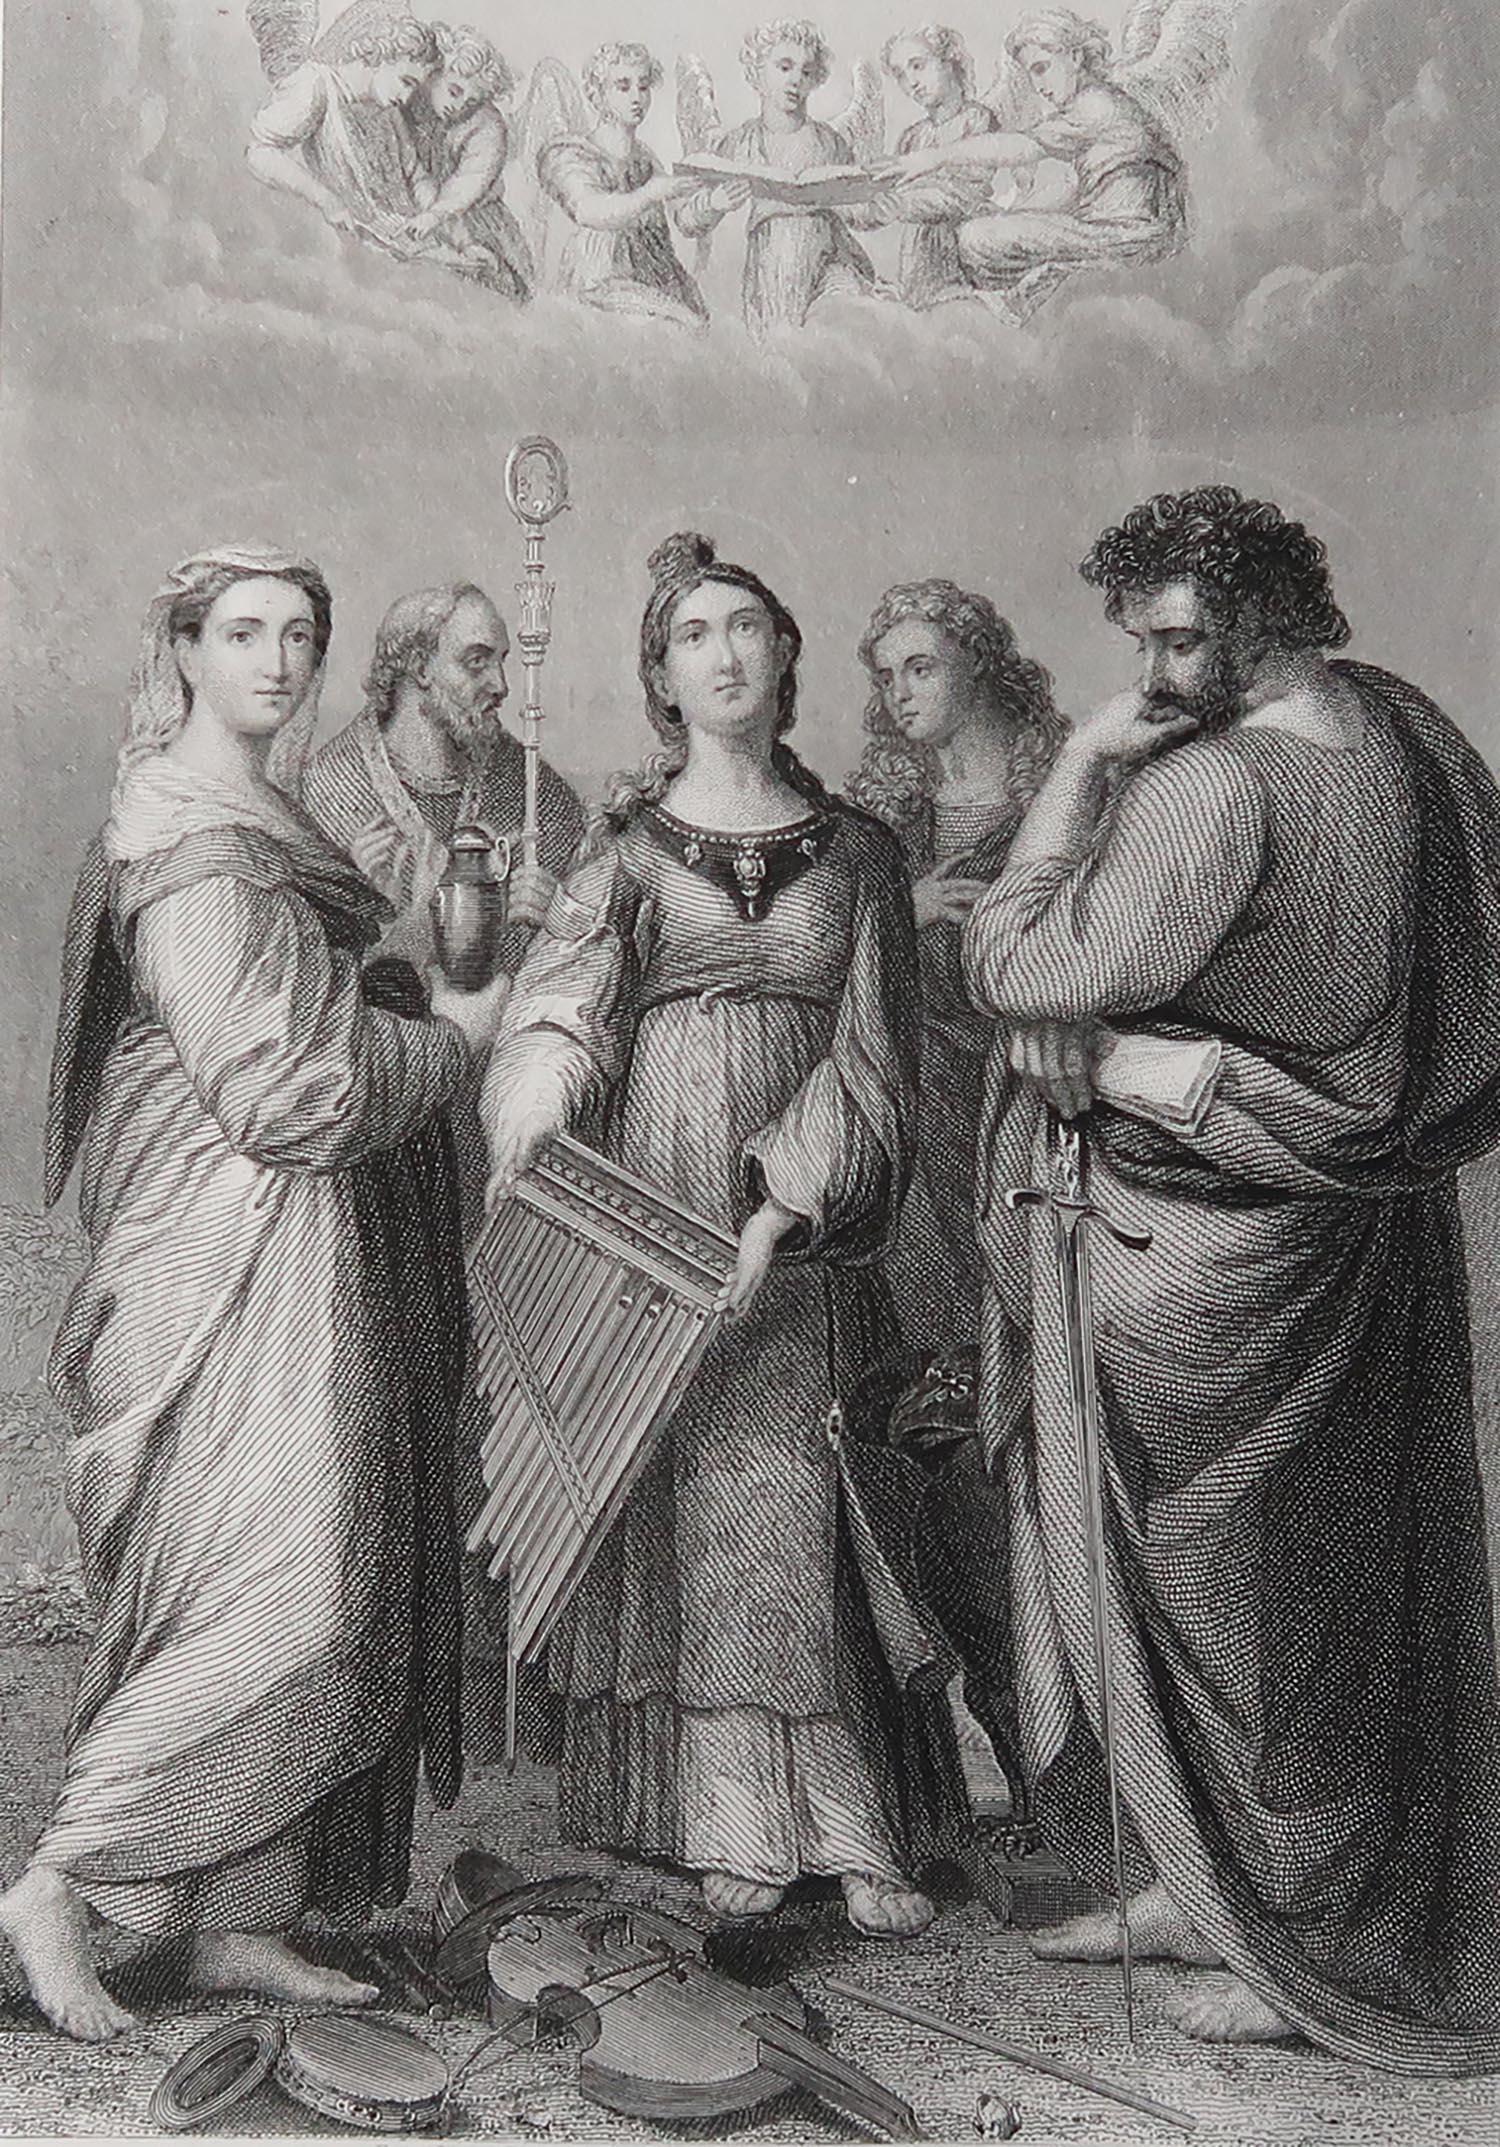 Wunderschönes Bild nach Raphael

Feiner Stahlstich. 

Veröffentlicht C.1850

Ungerahmt.

